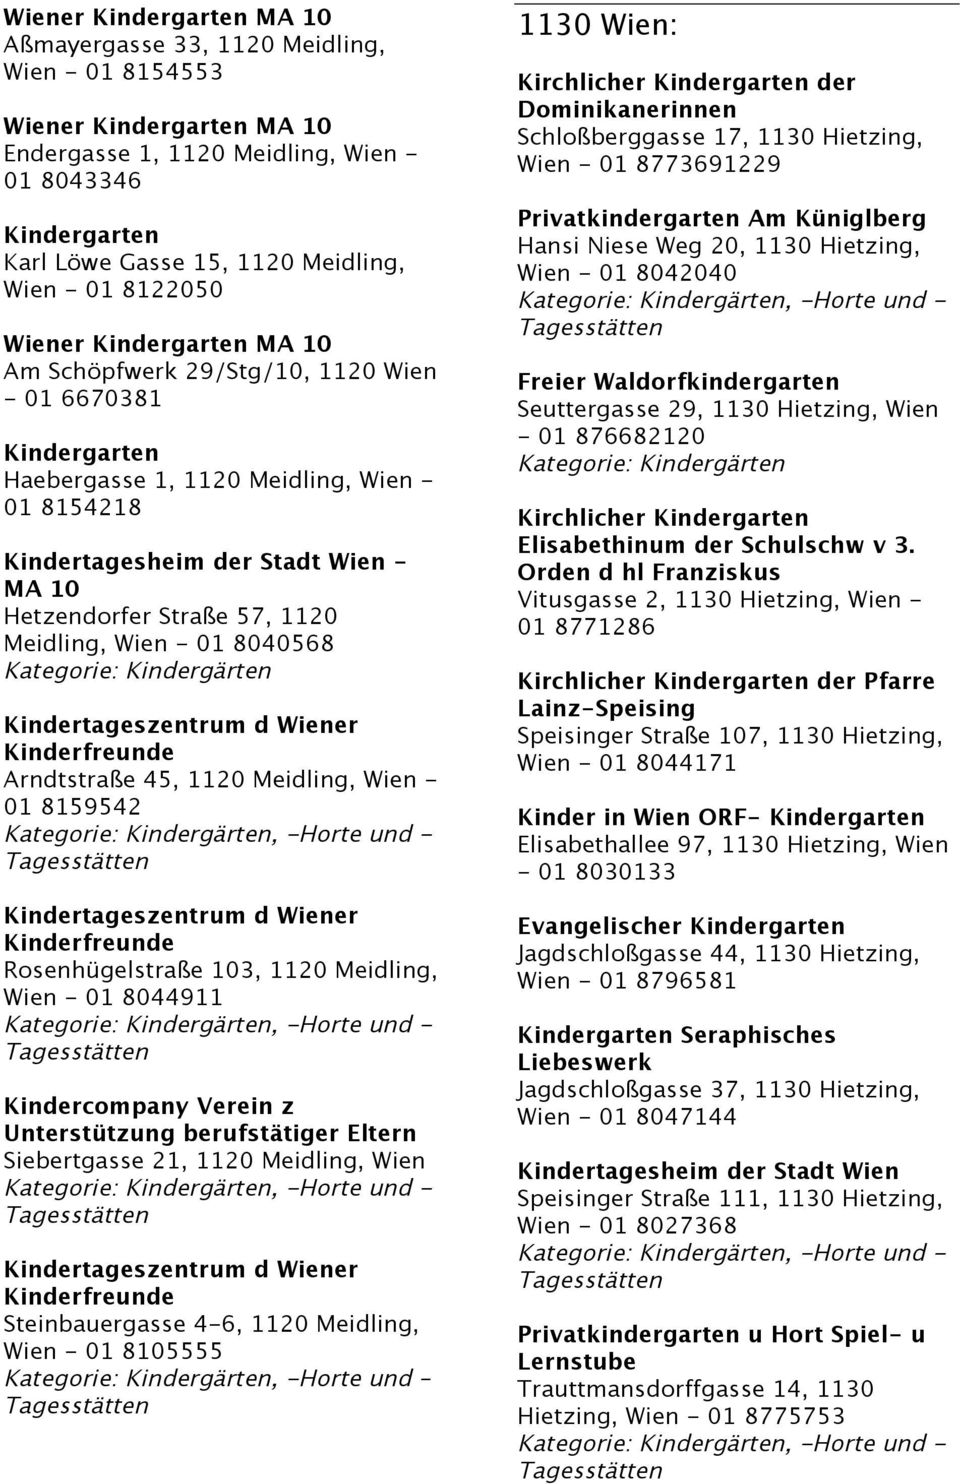 1120 Meidling, Wien - 01 8044911 Kindercompany Verein z Unterstützung berufstätiger Eltern Siebertgasse 21, 1120 Meidling, Wien Steinbauergasse 4-6, 1120 Meidling, Wien - 01 8105555, -Horte und 1130